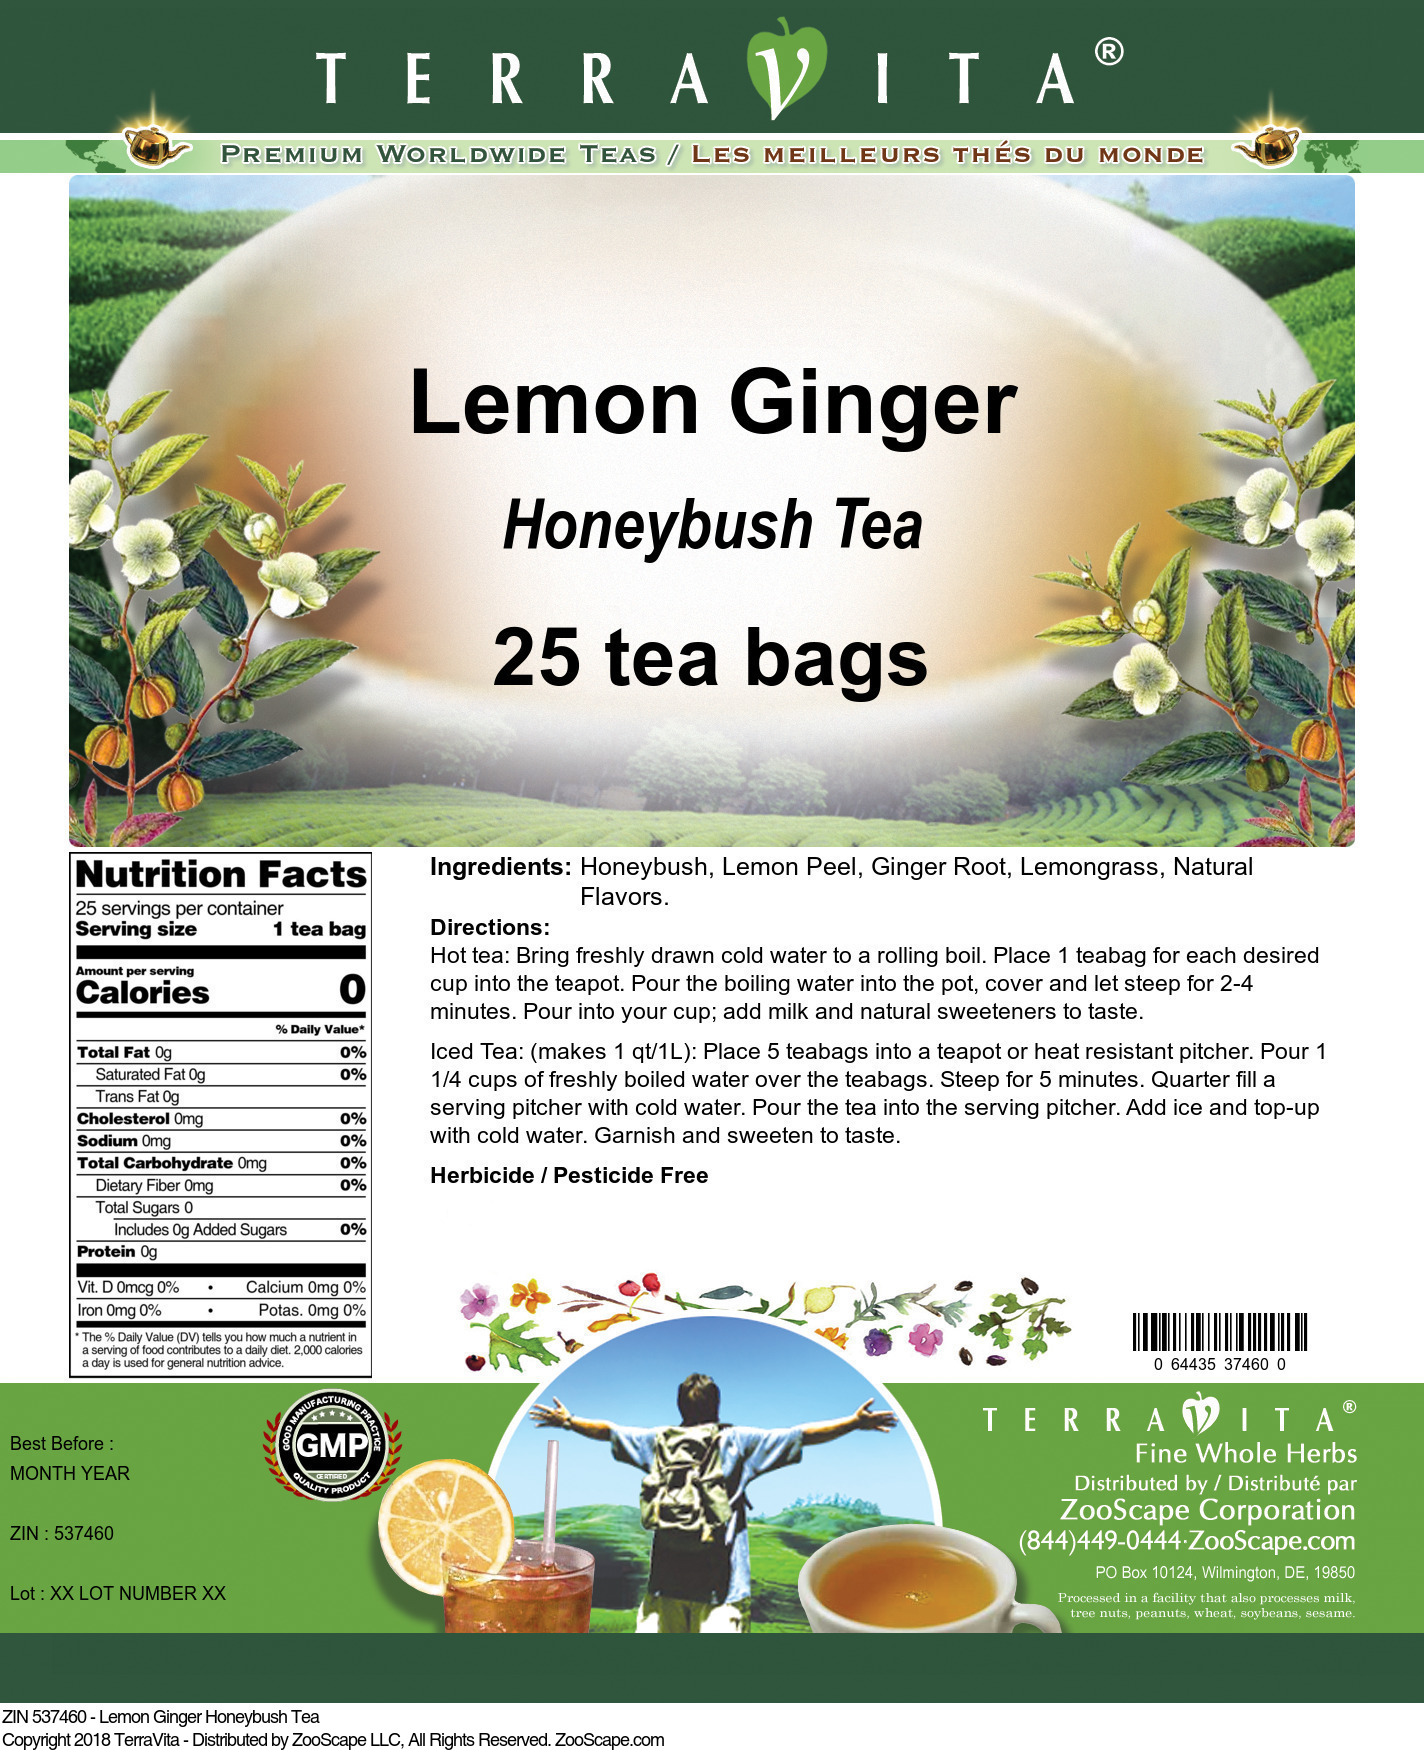 Lemon Ginger Honeybush Tea - Label